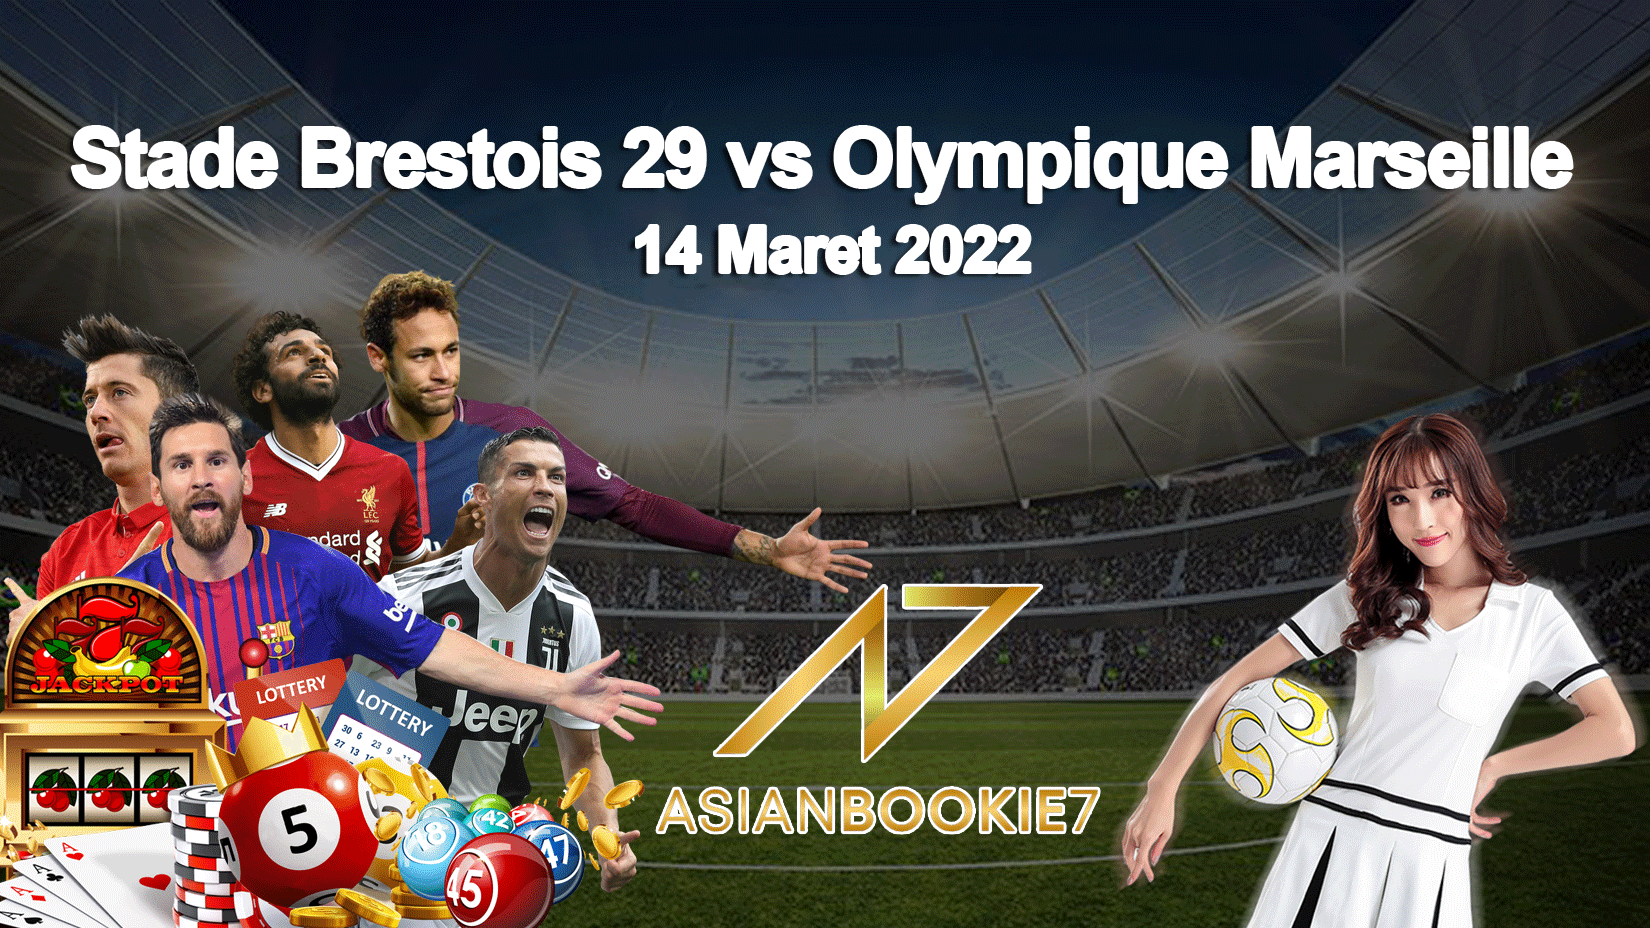 Prediksi Stade Brestois 29 vs Olympique Marseille 14 Maret 2022